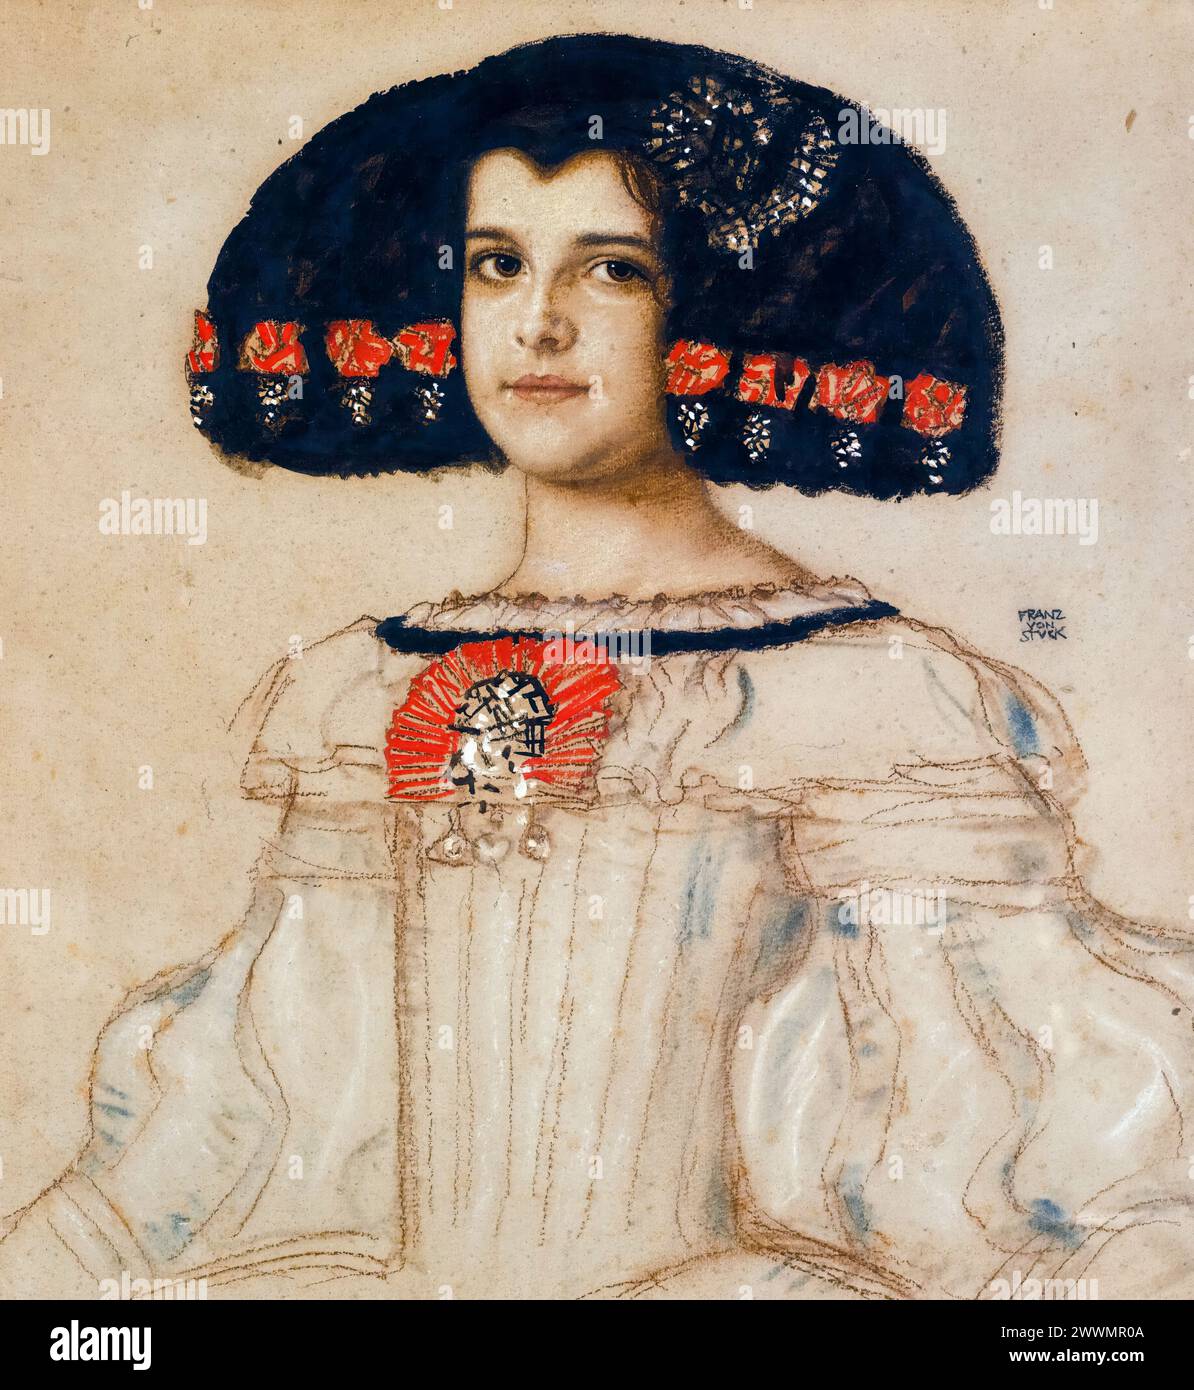 Mary a collé la fille de l’artiste en robe Velasquez, portrait dessiné en technique mixte à bord par Franz von Stuck, vers 1908 Banque D'Images